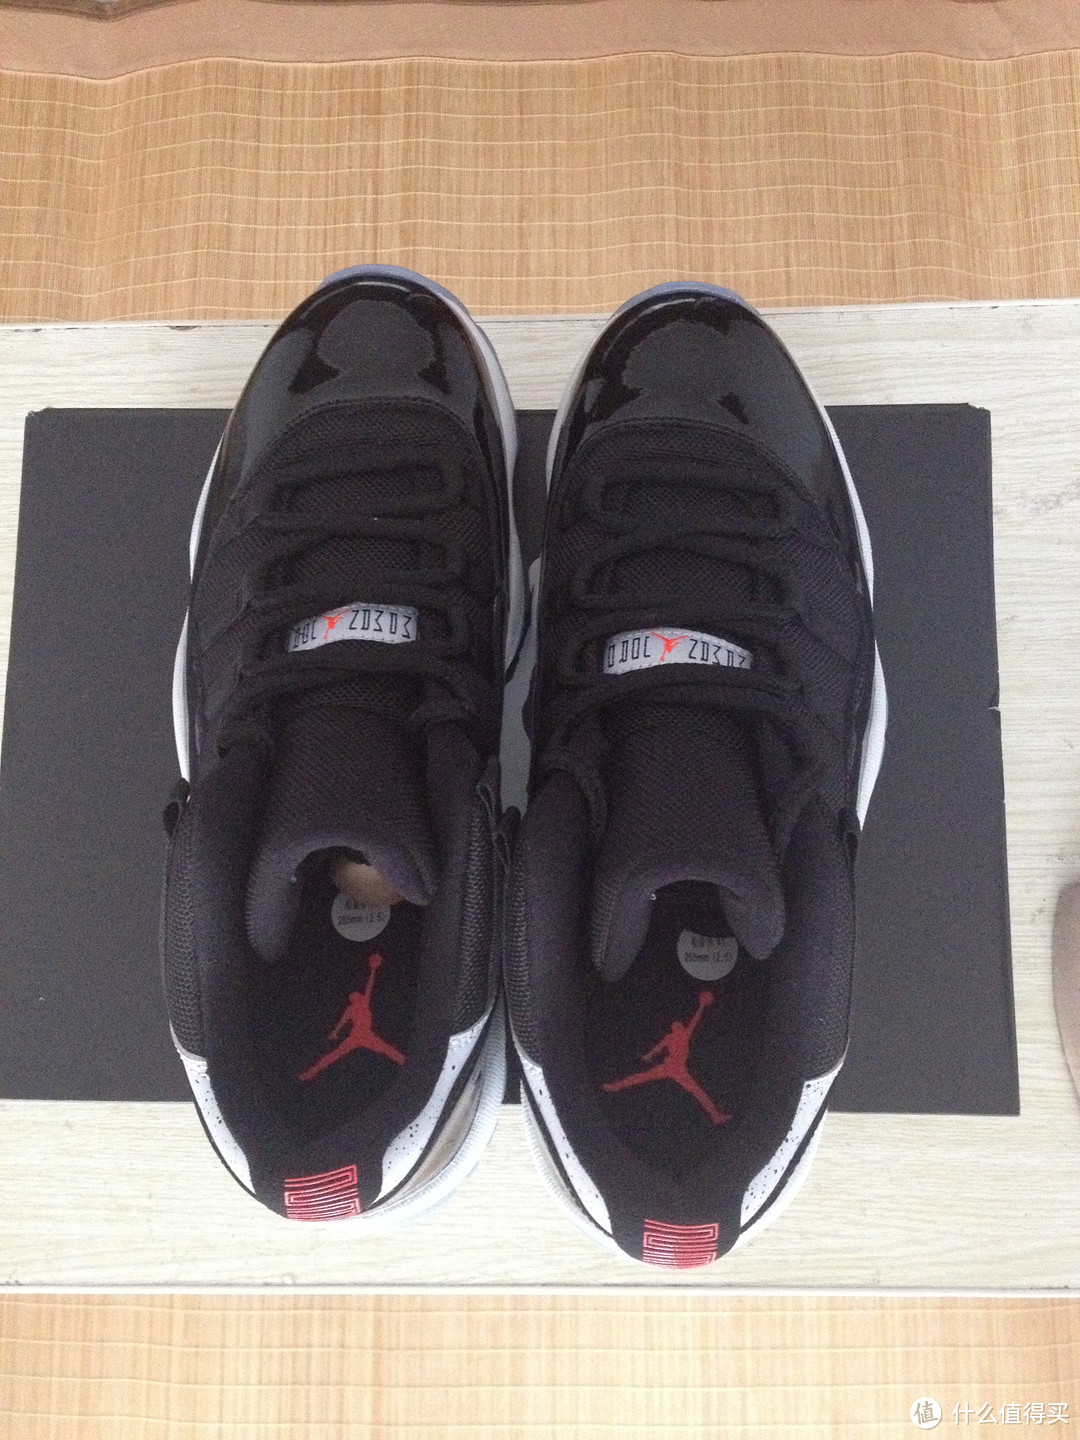 学生党入手NIKE 耐克 Air Jordan 11 Low“Infrared 23” 低帮篮球鞋，LD出镜